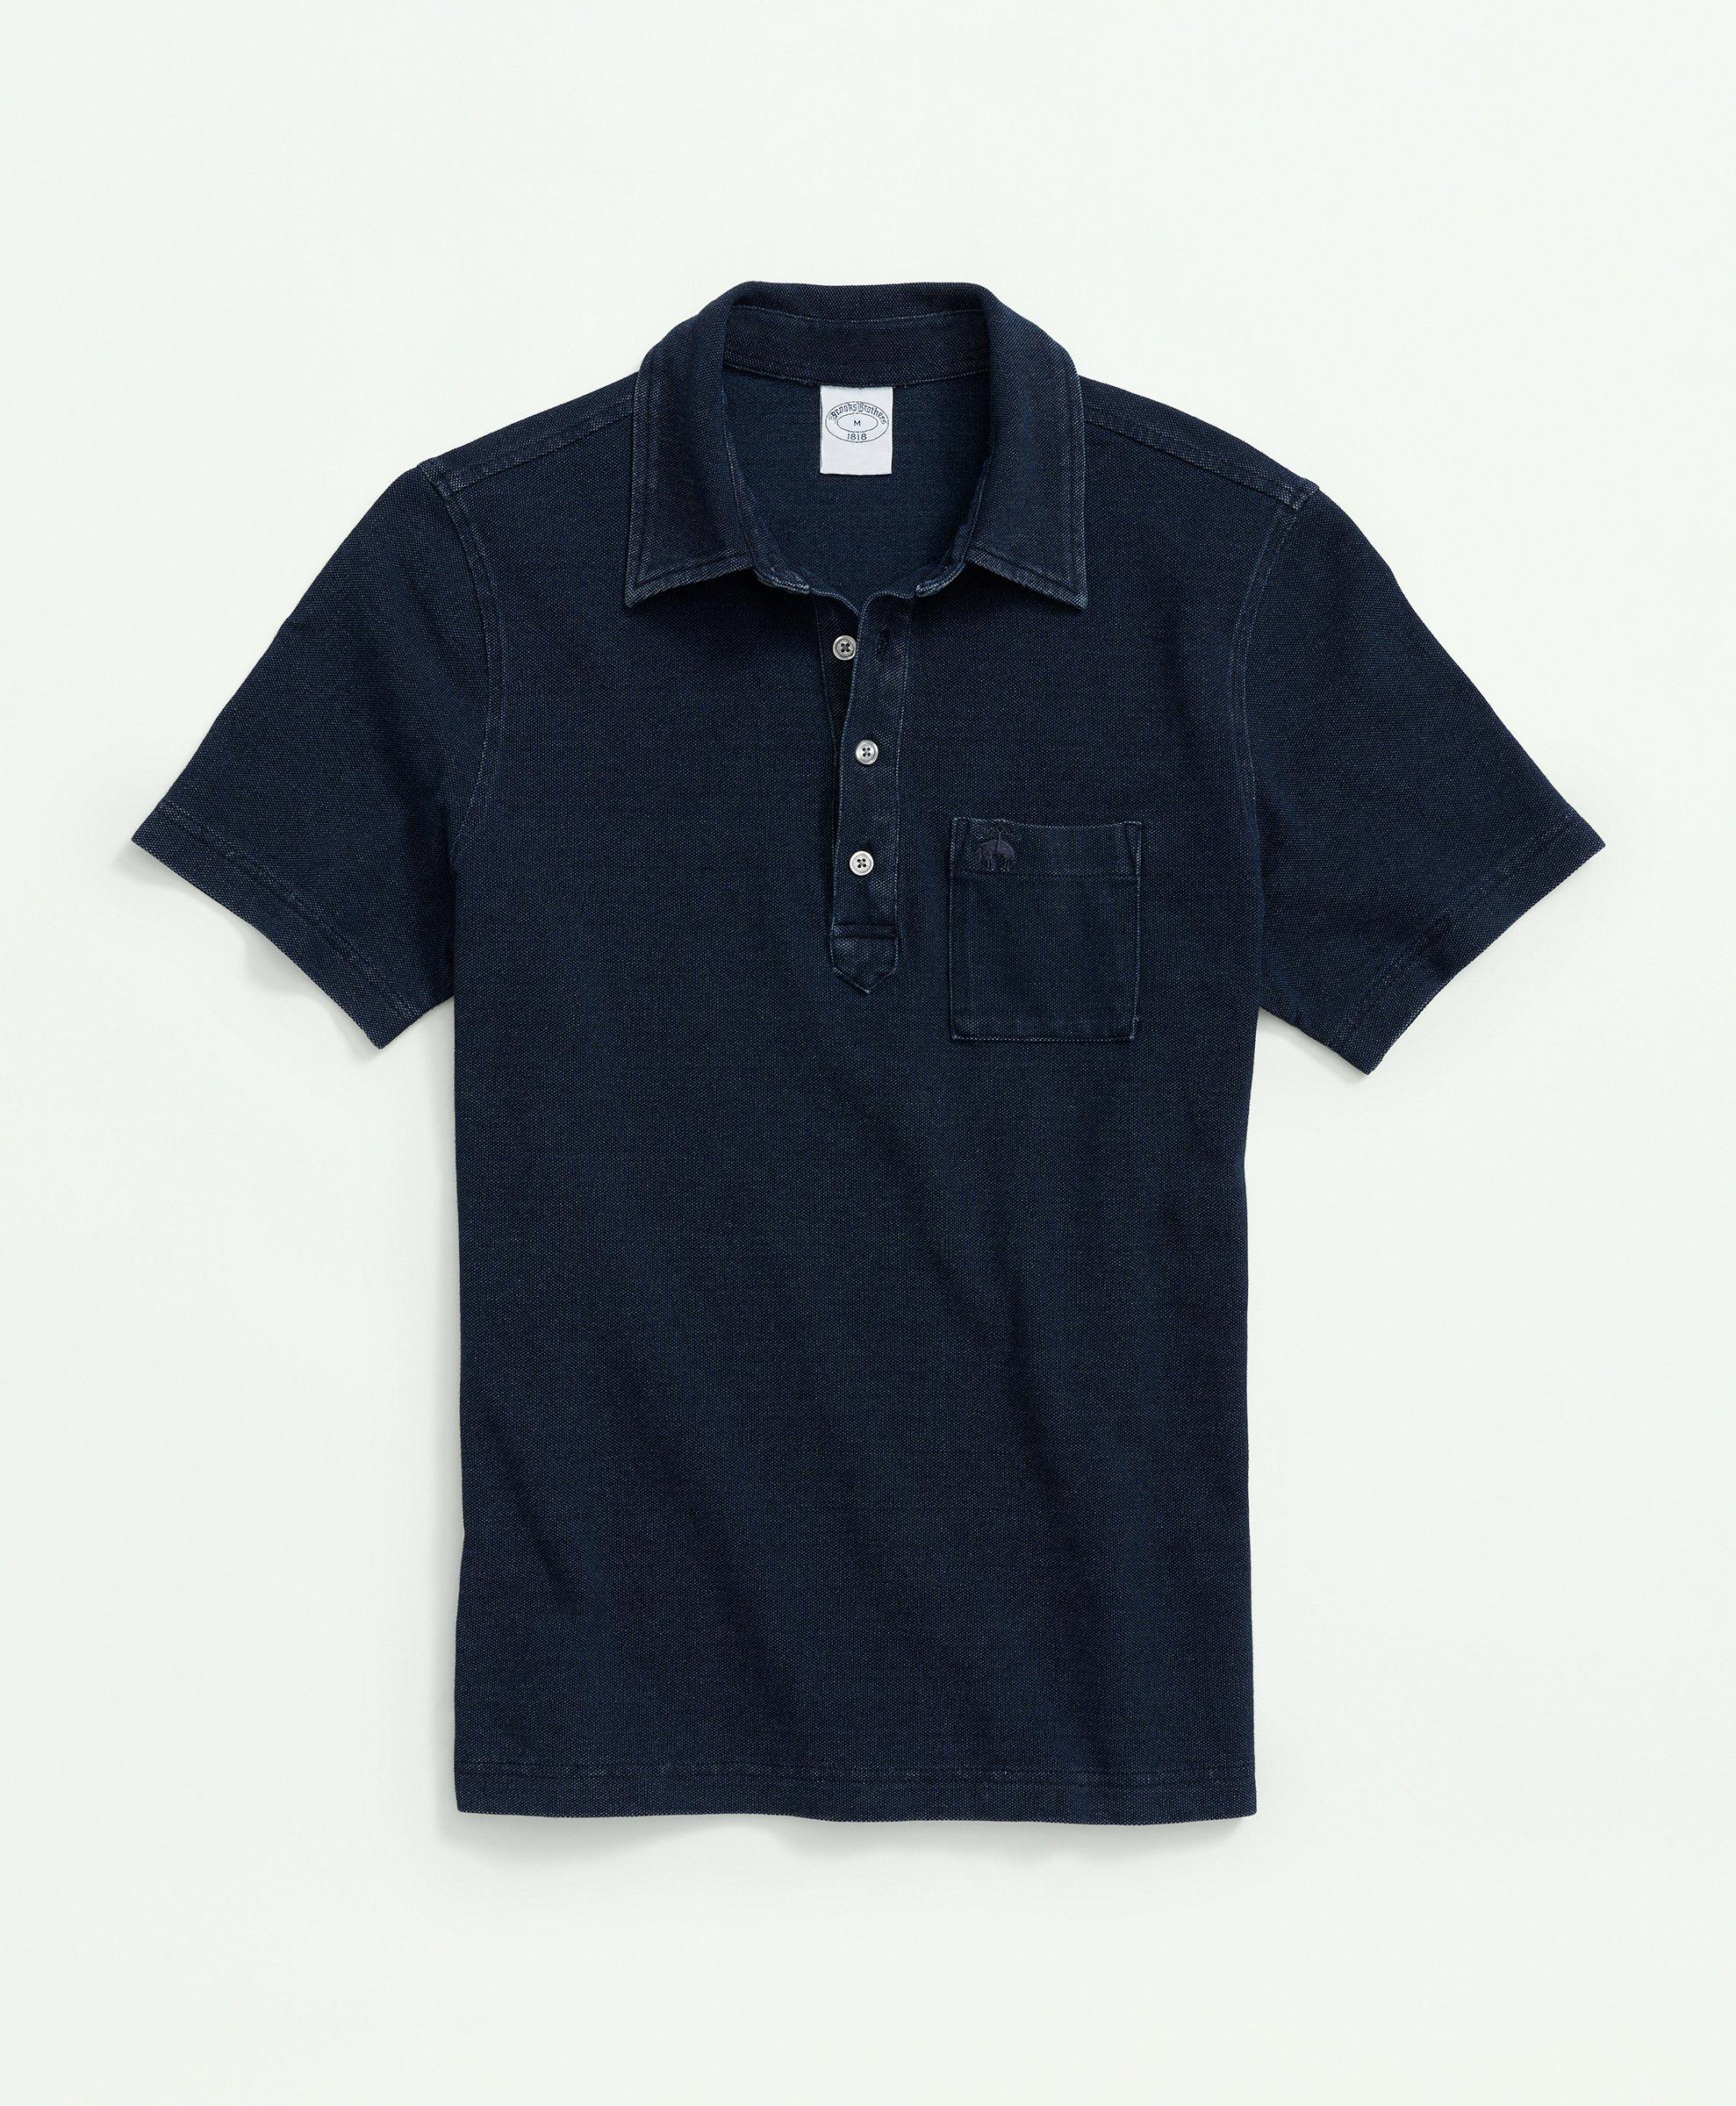 Vintage Pique Indigo Short-Sleeve Polo Shirt, image 1